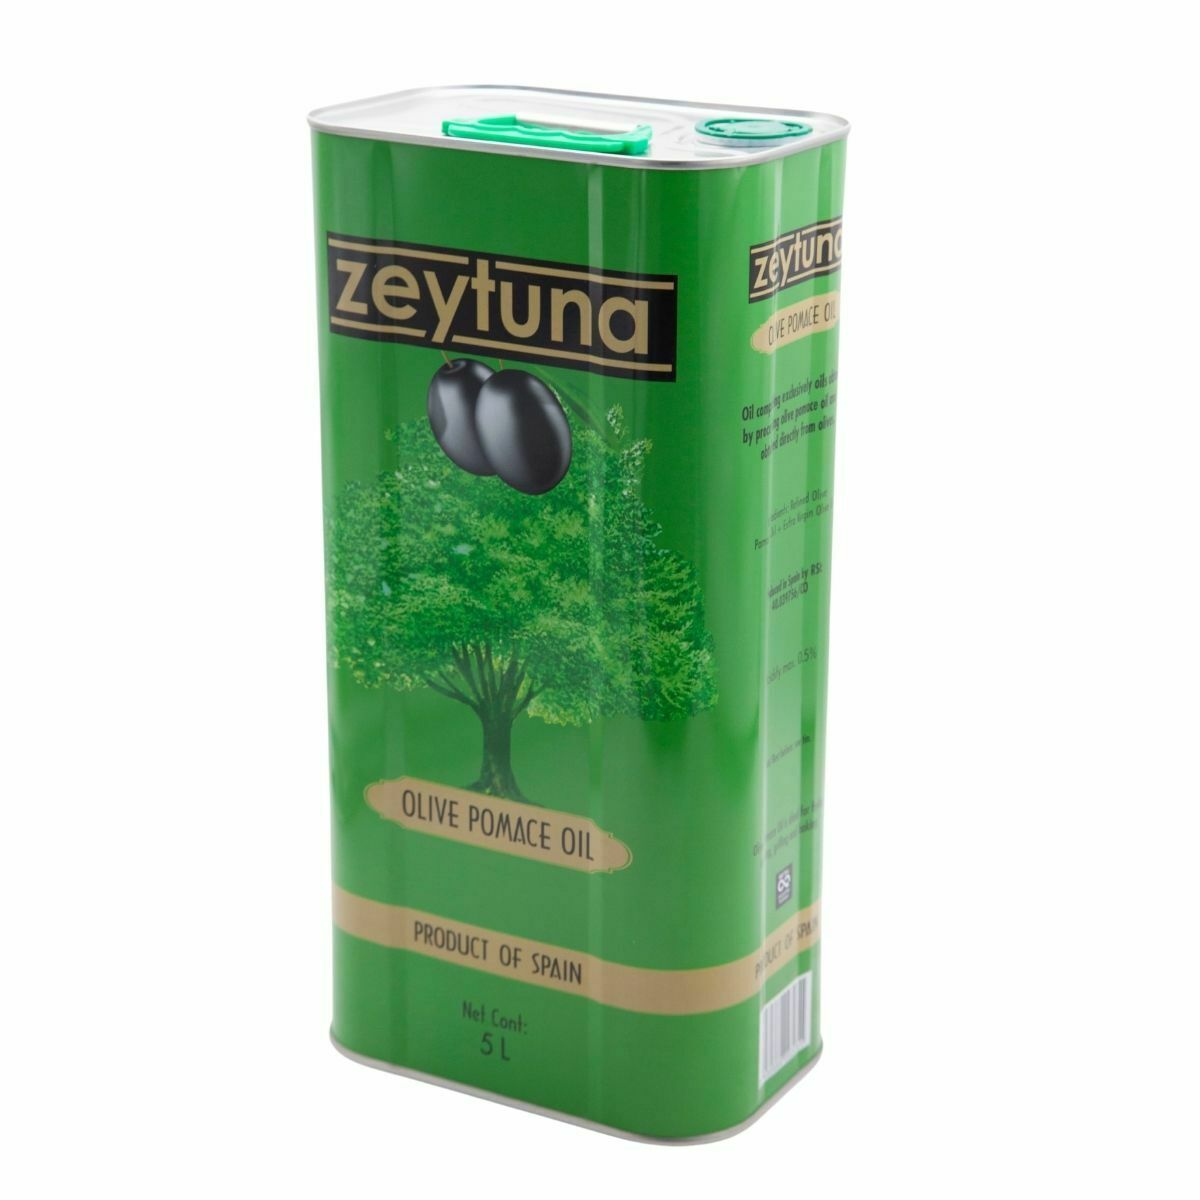 Zeytuna Olive Pomace Oil (5L) - Aytac Foods